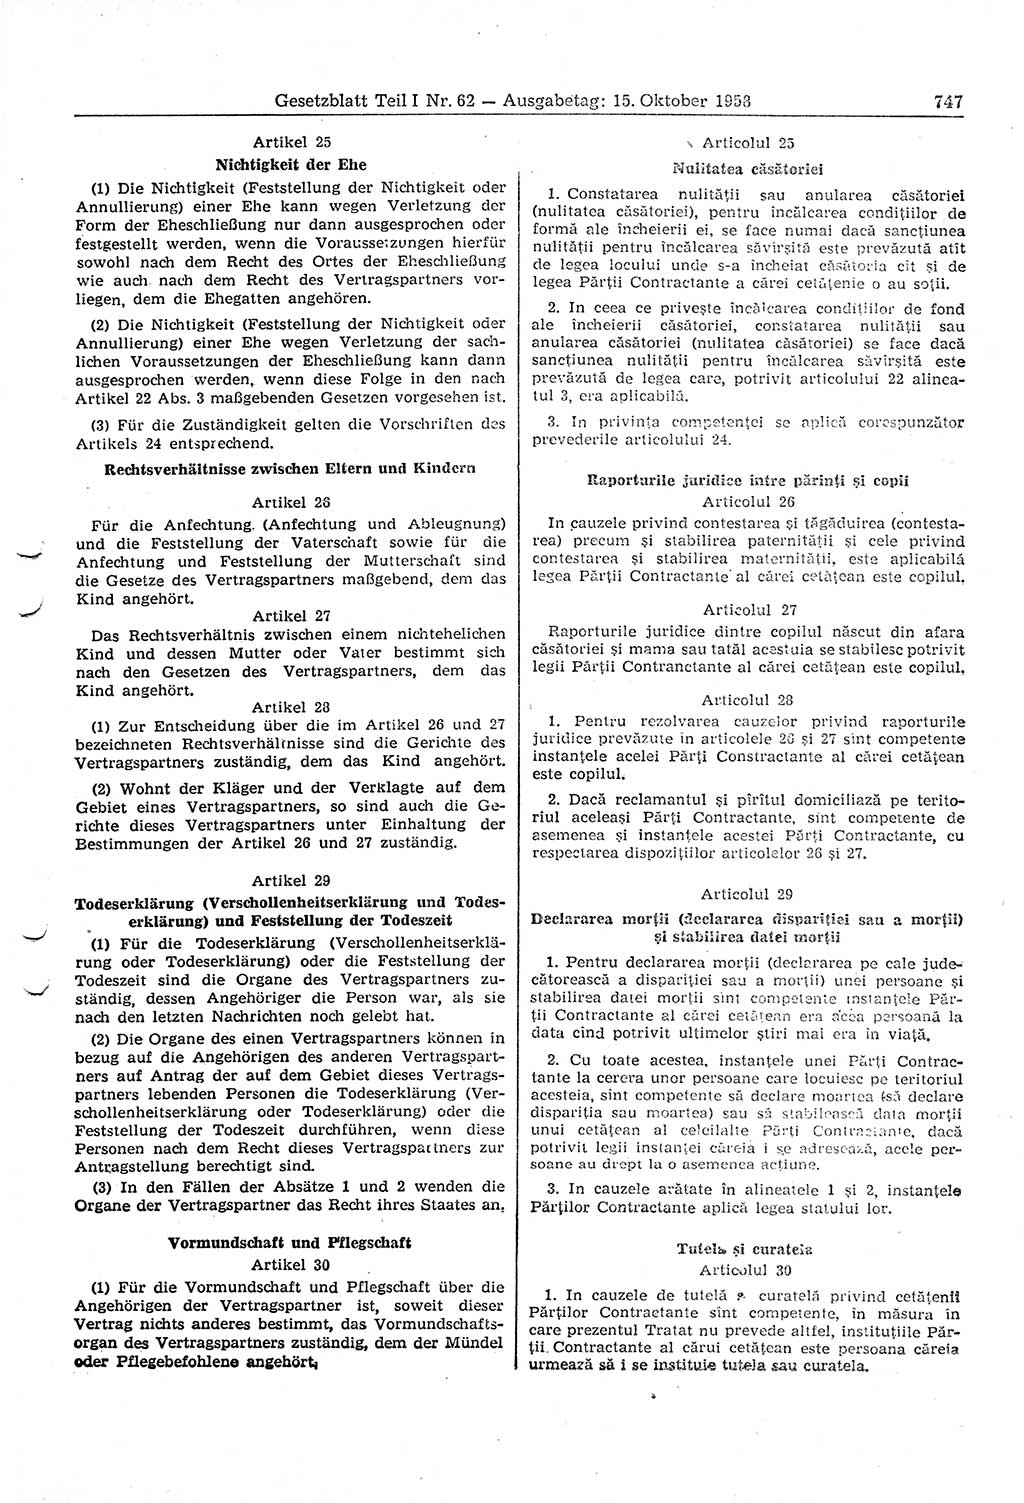 Gesetzblatt (GBl.) der Deutschen Demokratischen Republik (DDR) Teil Ⅰ 1958, Seite 747 (GBl. DDR Ⅰ 1958, S. 747)